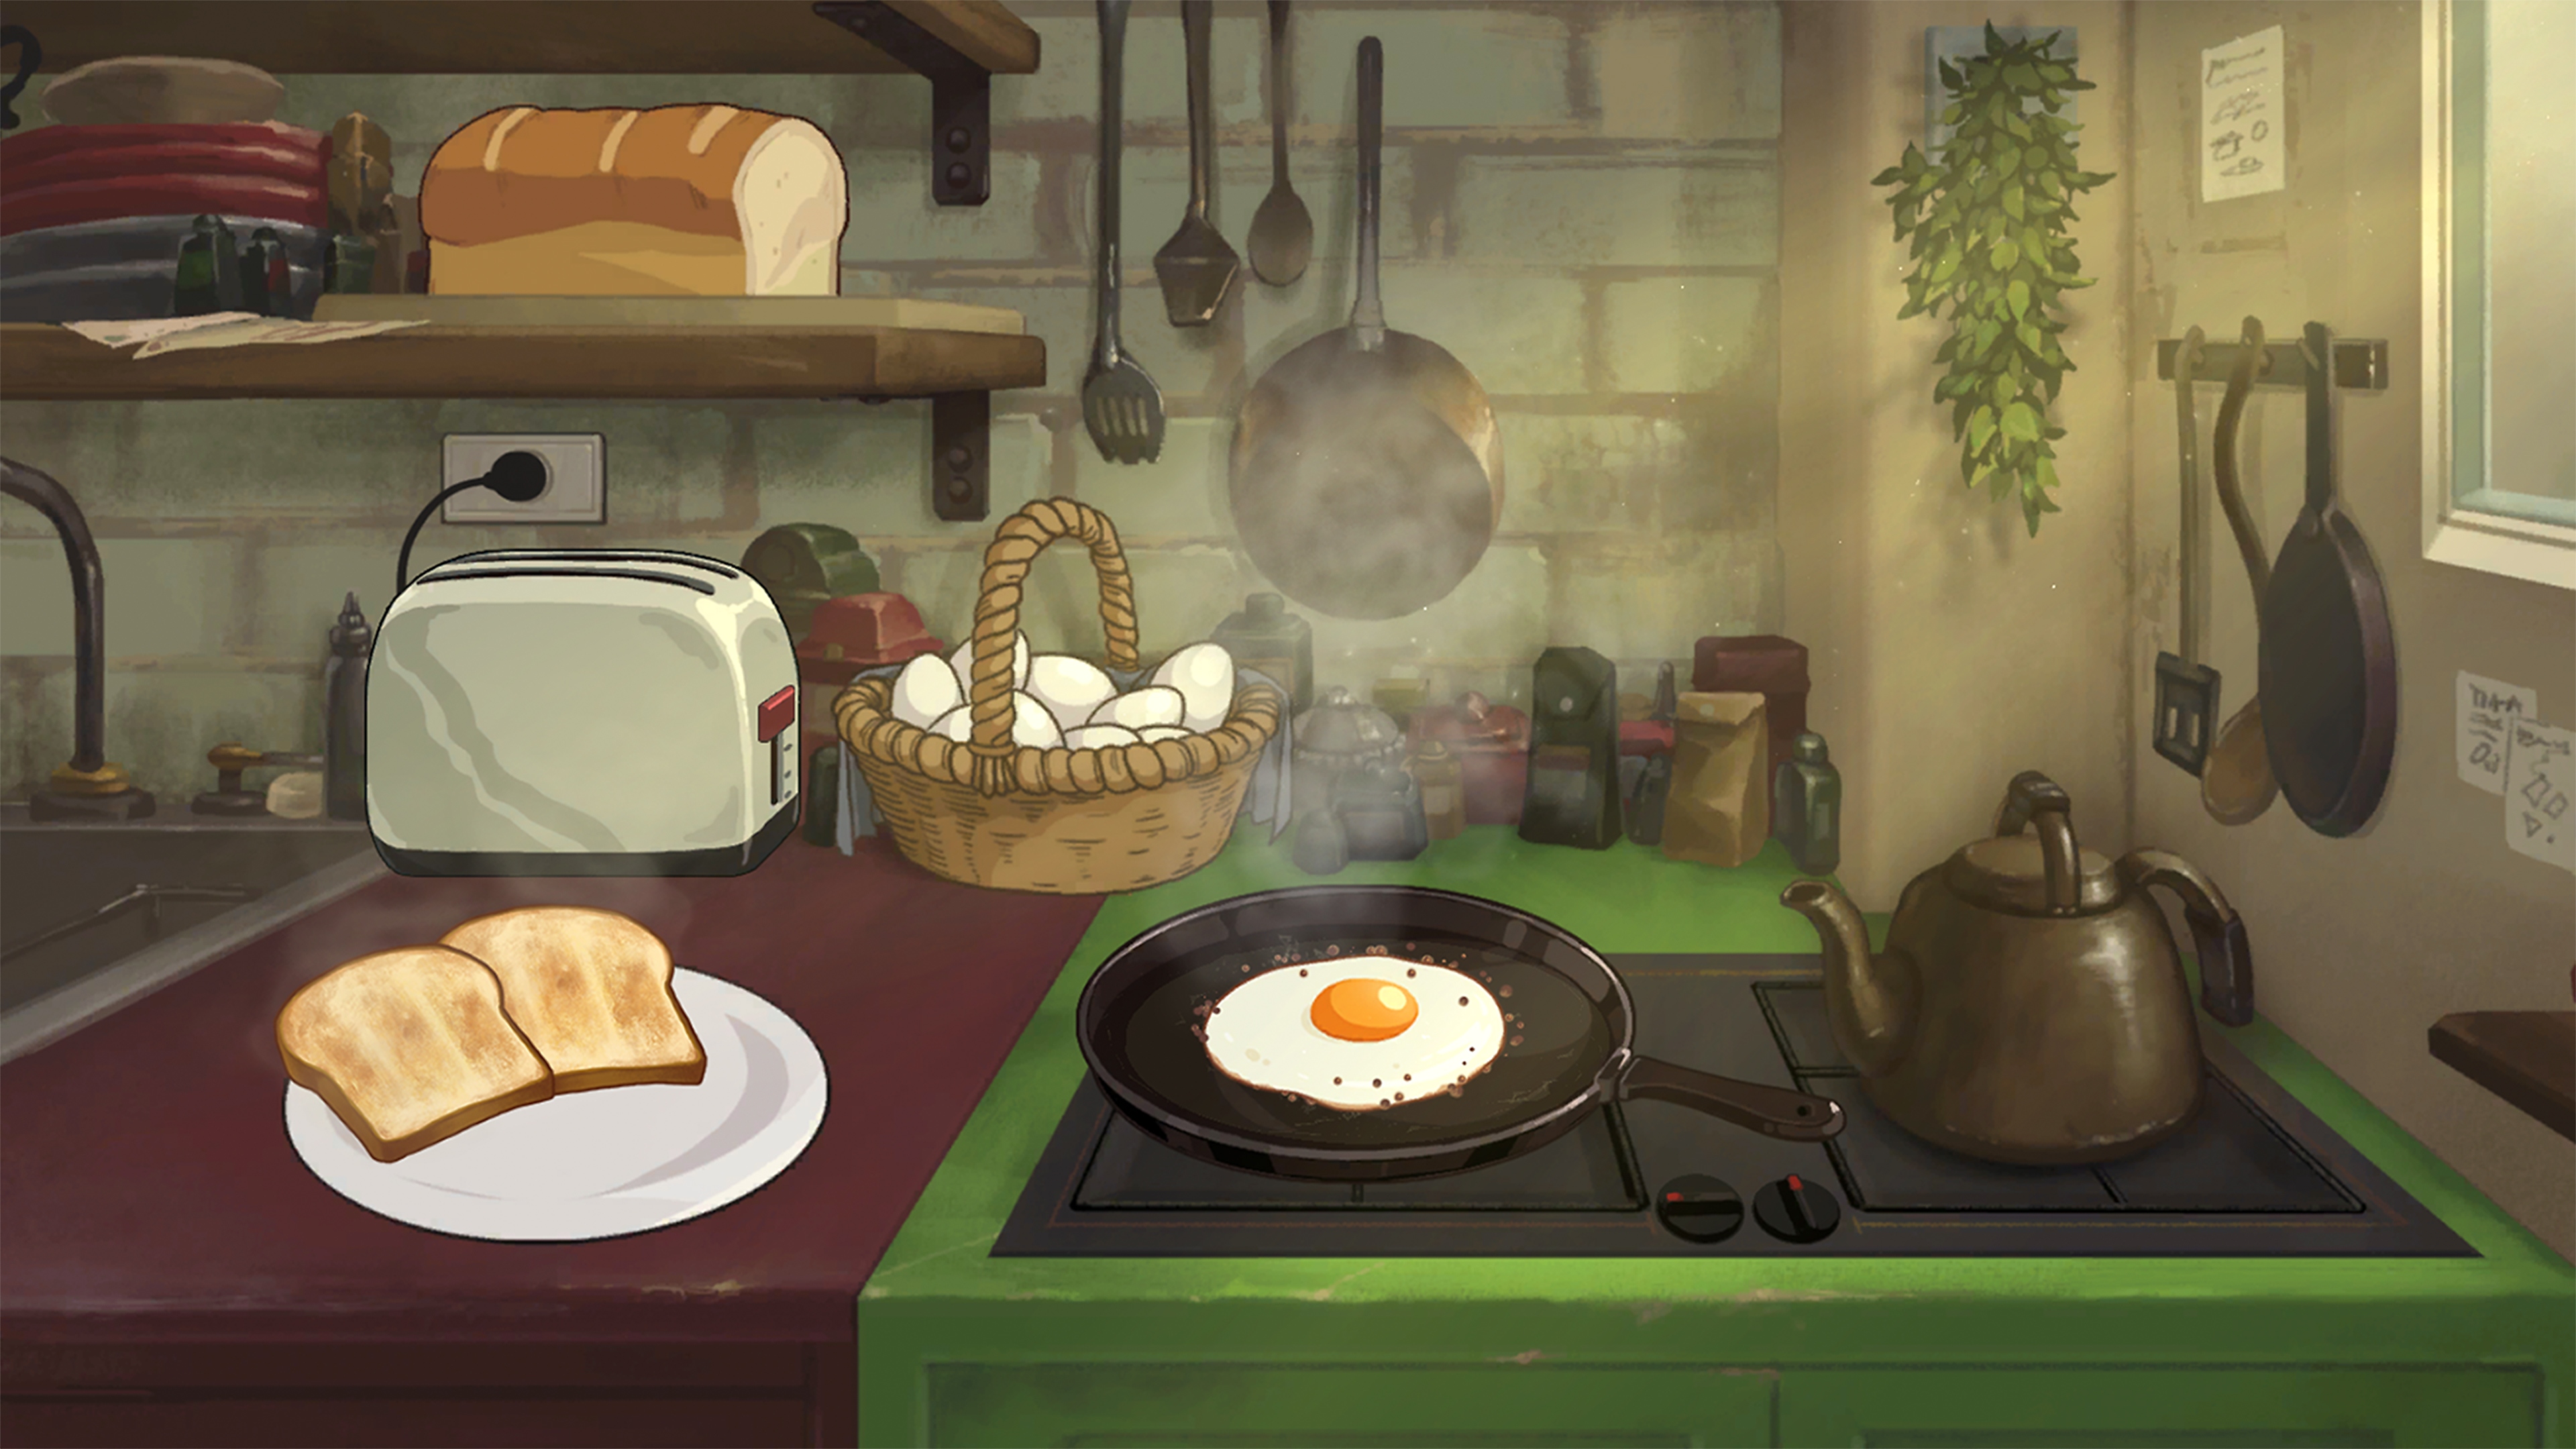 Behind the Frame: The Finest Scenery – zrzut ekranu przedstawiający śniadanie, przygotowywane na kuchence